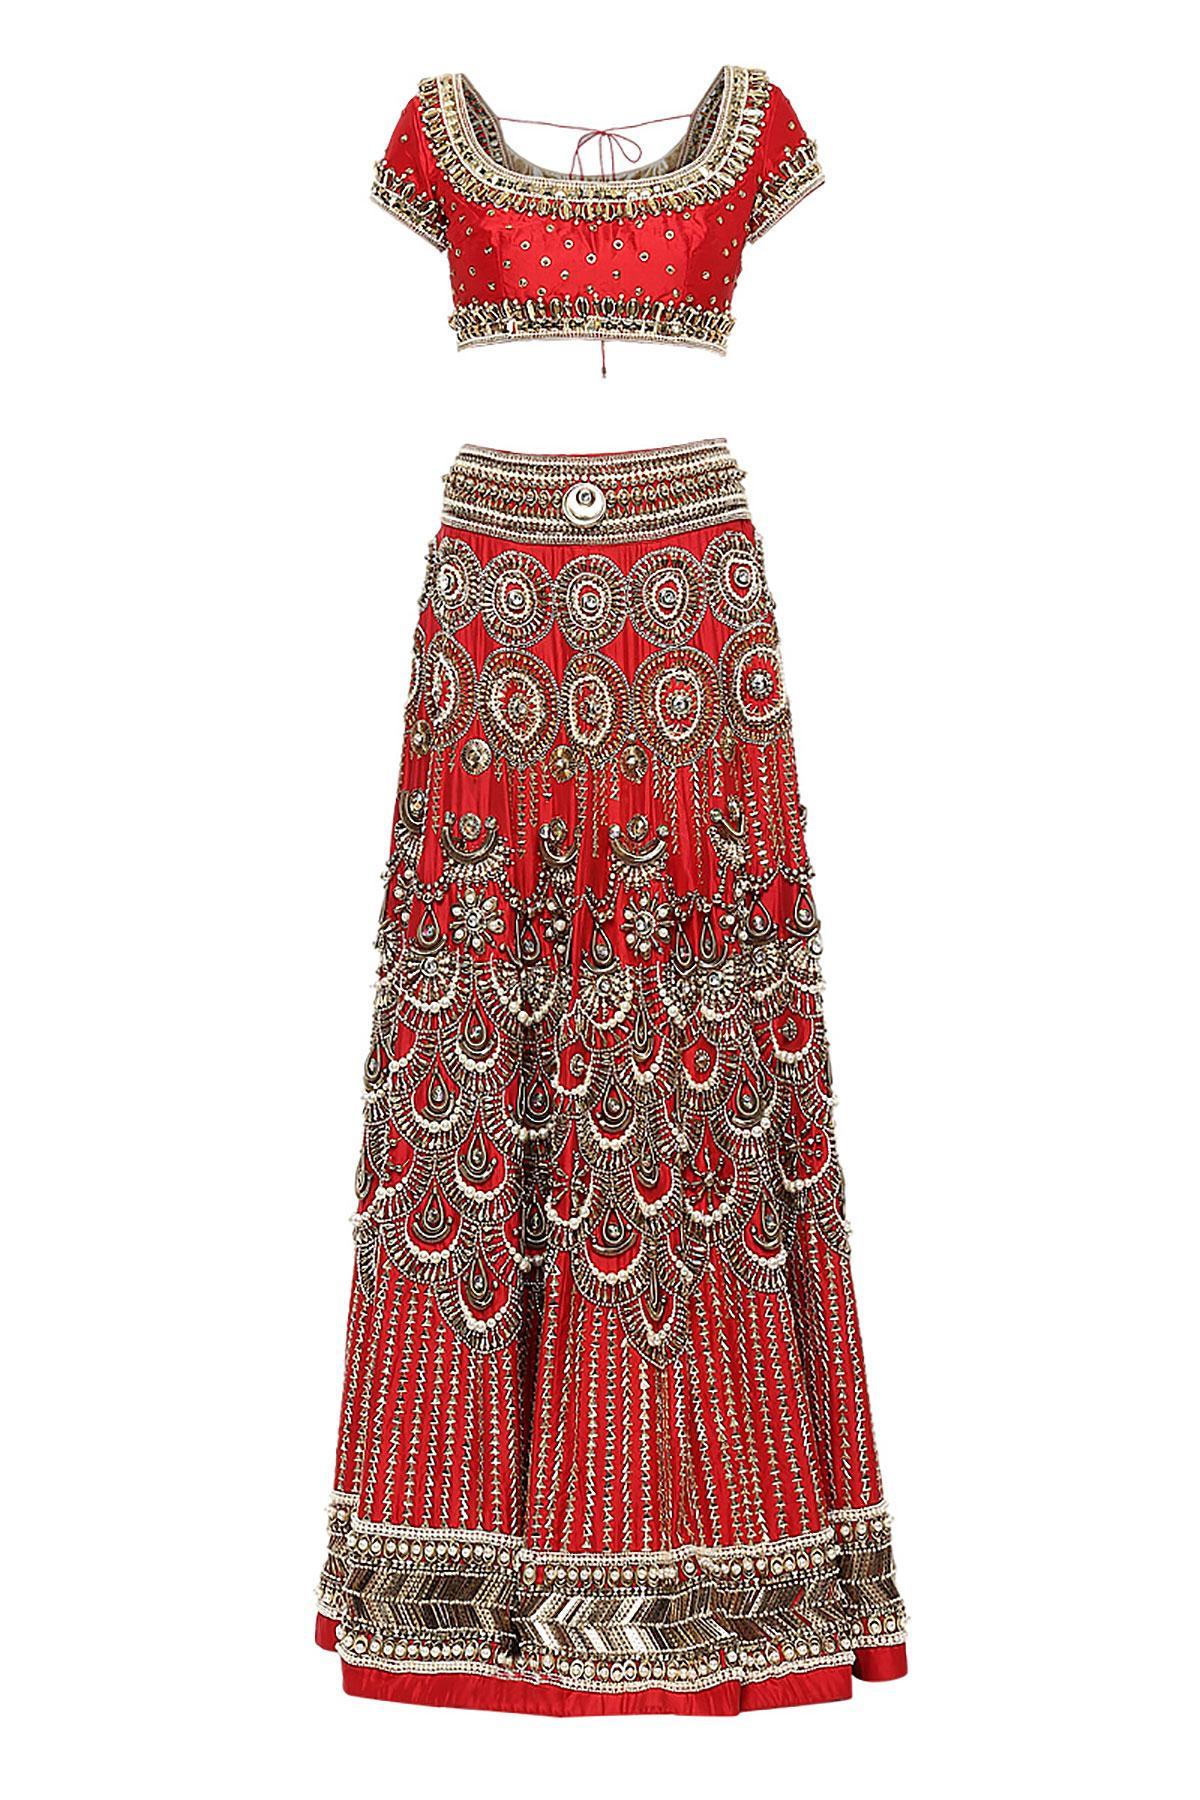 Upasana Kamineni in Manish Arora – South India Fashion